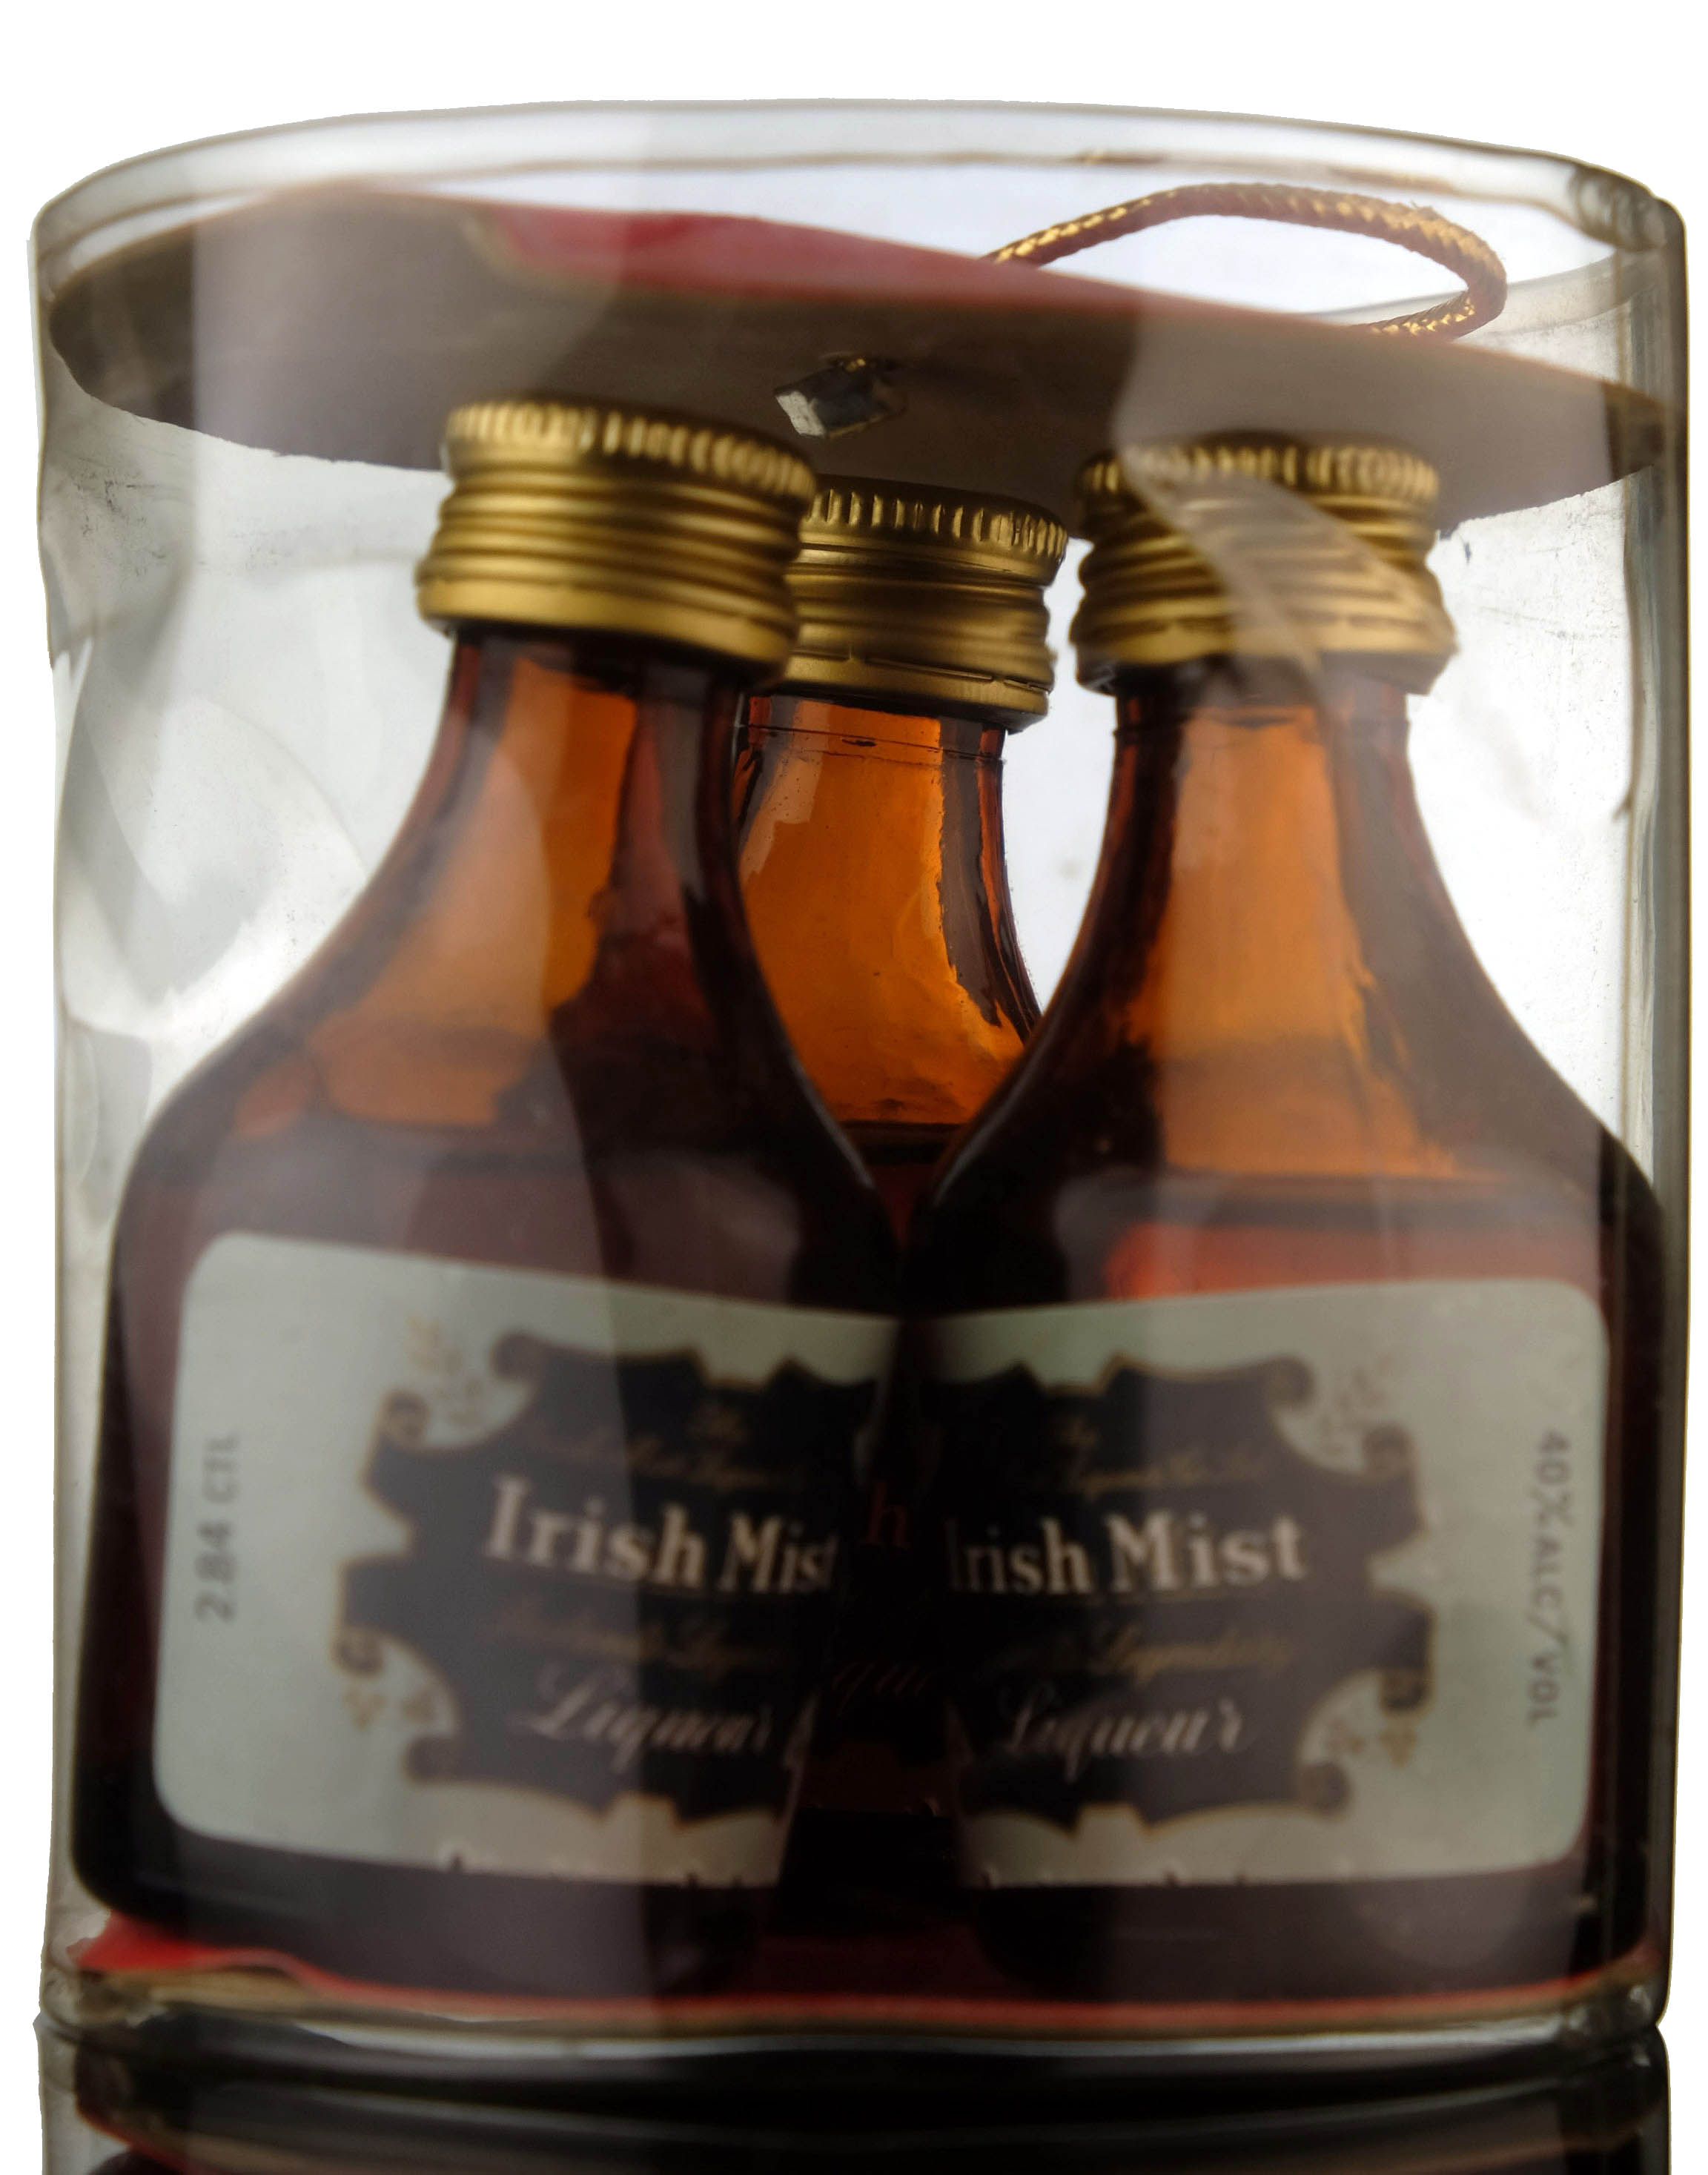 3 x Irish Mist Liqueurs Miniatures